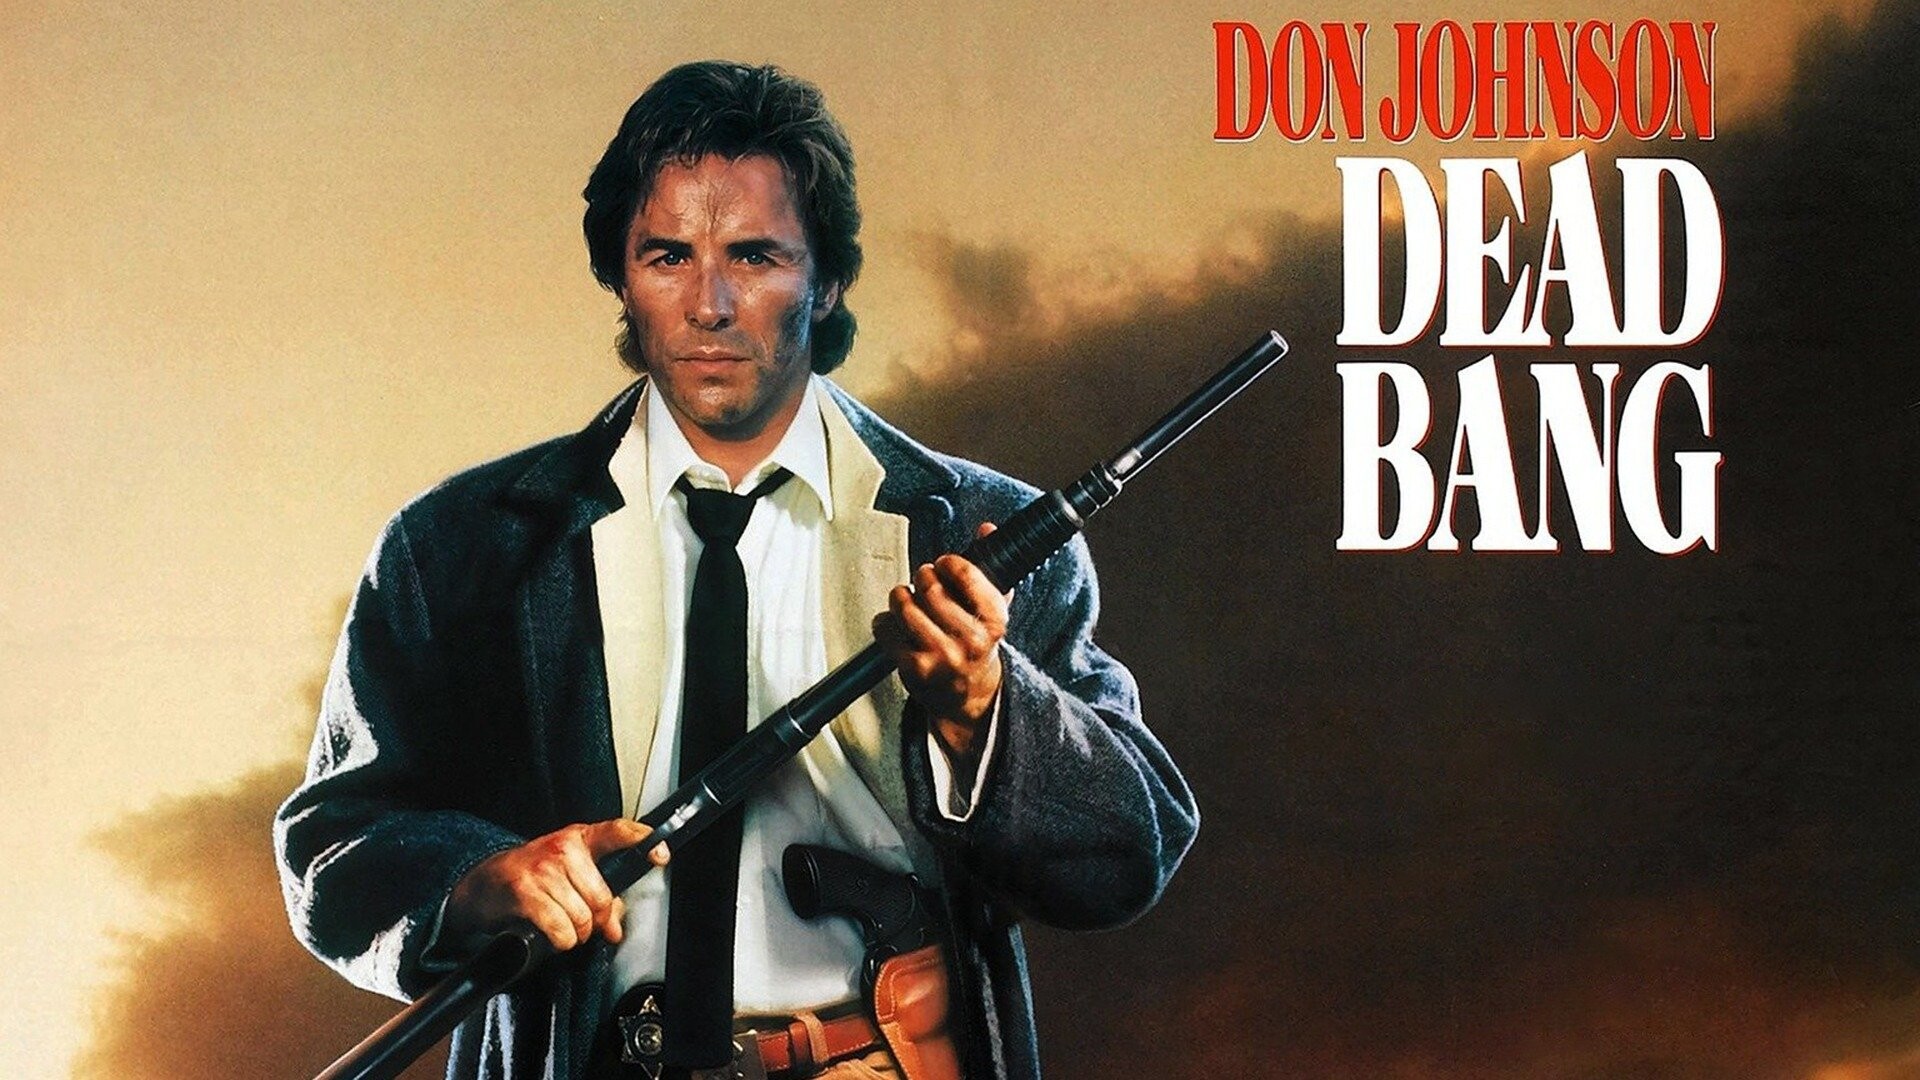 Don Johnson, Dead Bang movie, Crime thriller, Full movie online, 1920x1080 Full HD Desktop